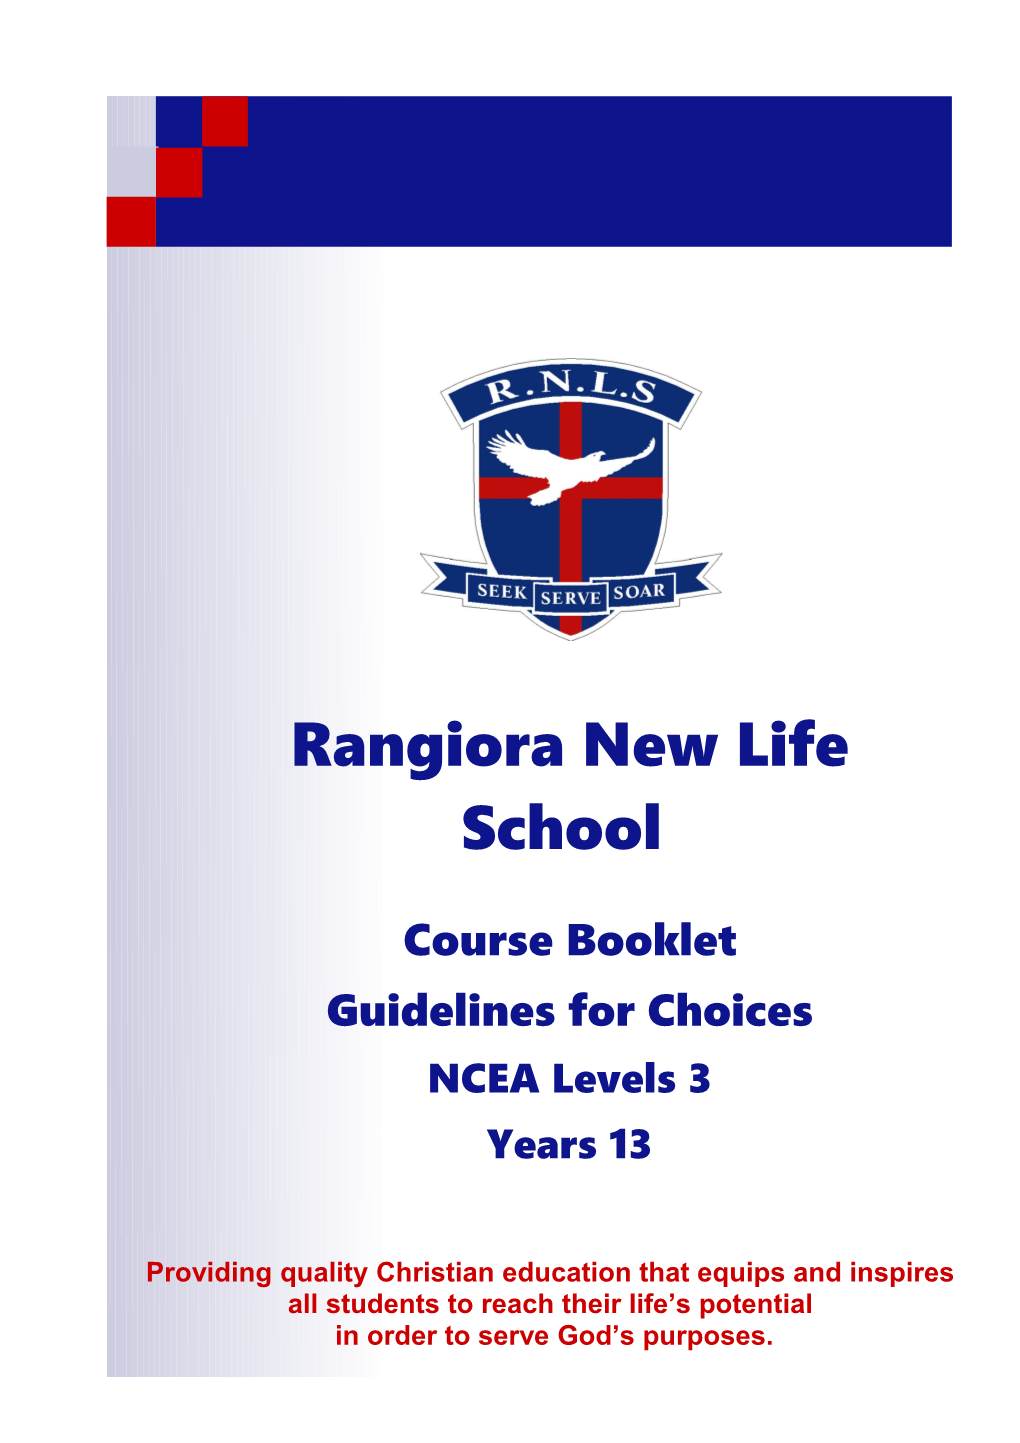 Rangiora New Life School